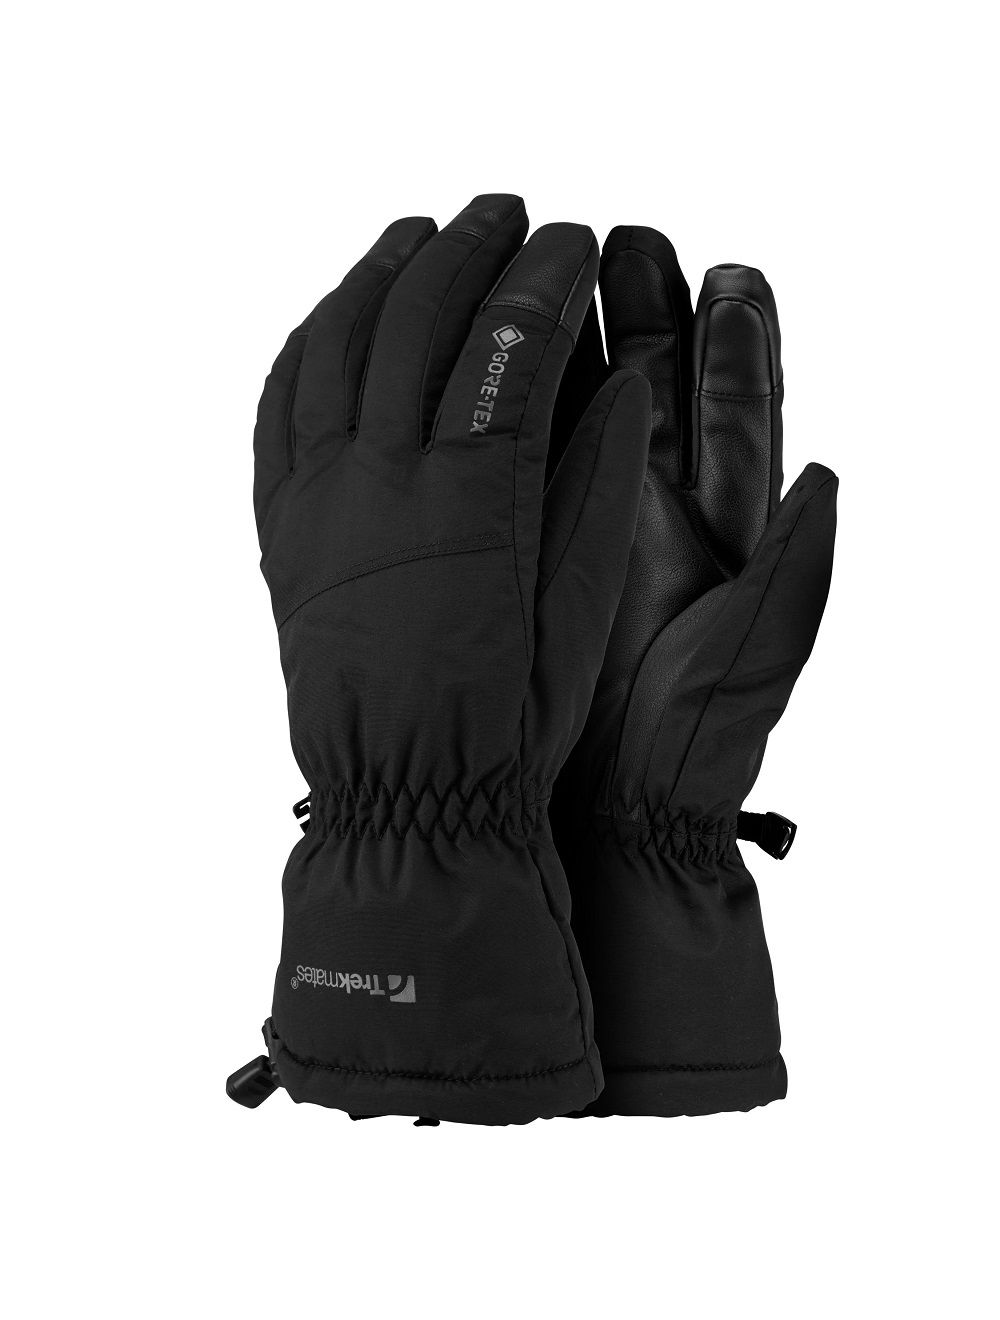 De Trekmates Chamonix Glove voor bestellen ? Ronald Adventure Shop - Beverwijk